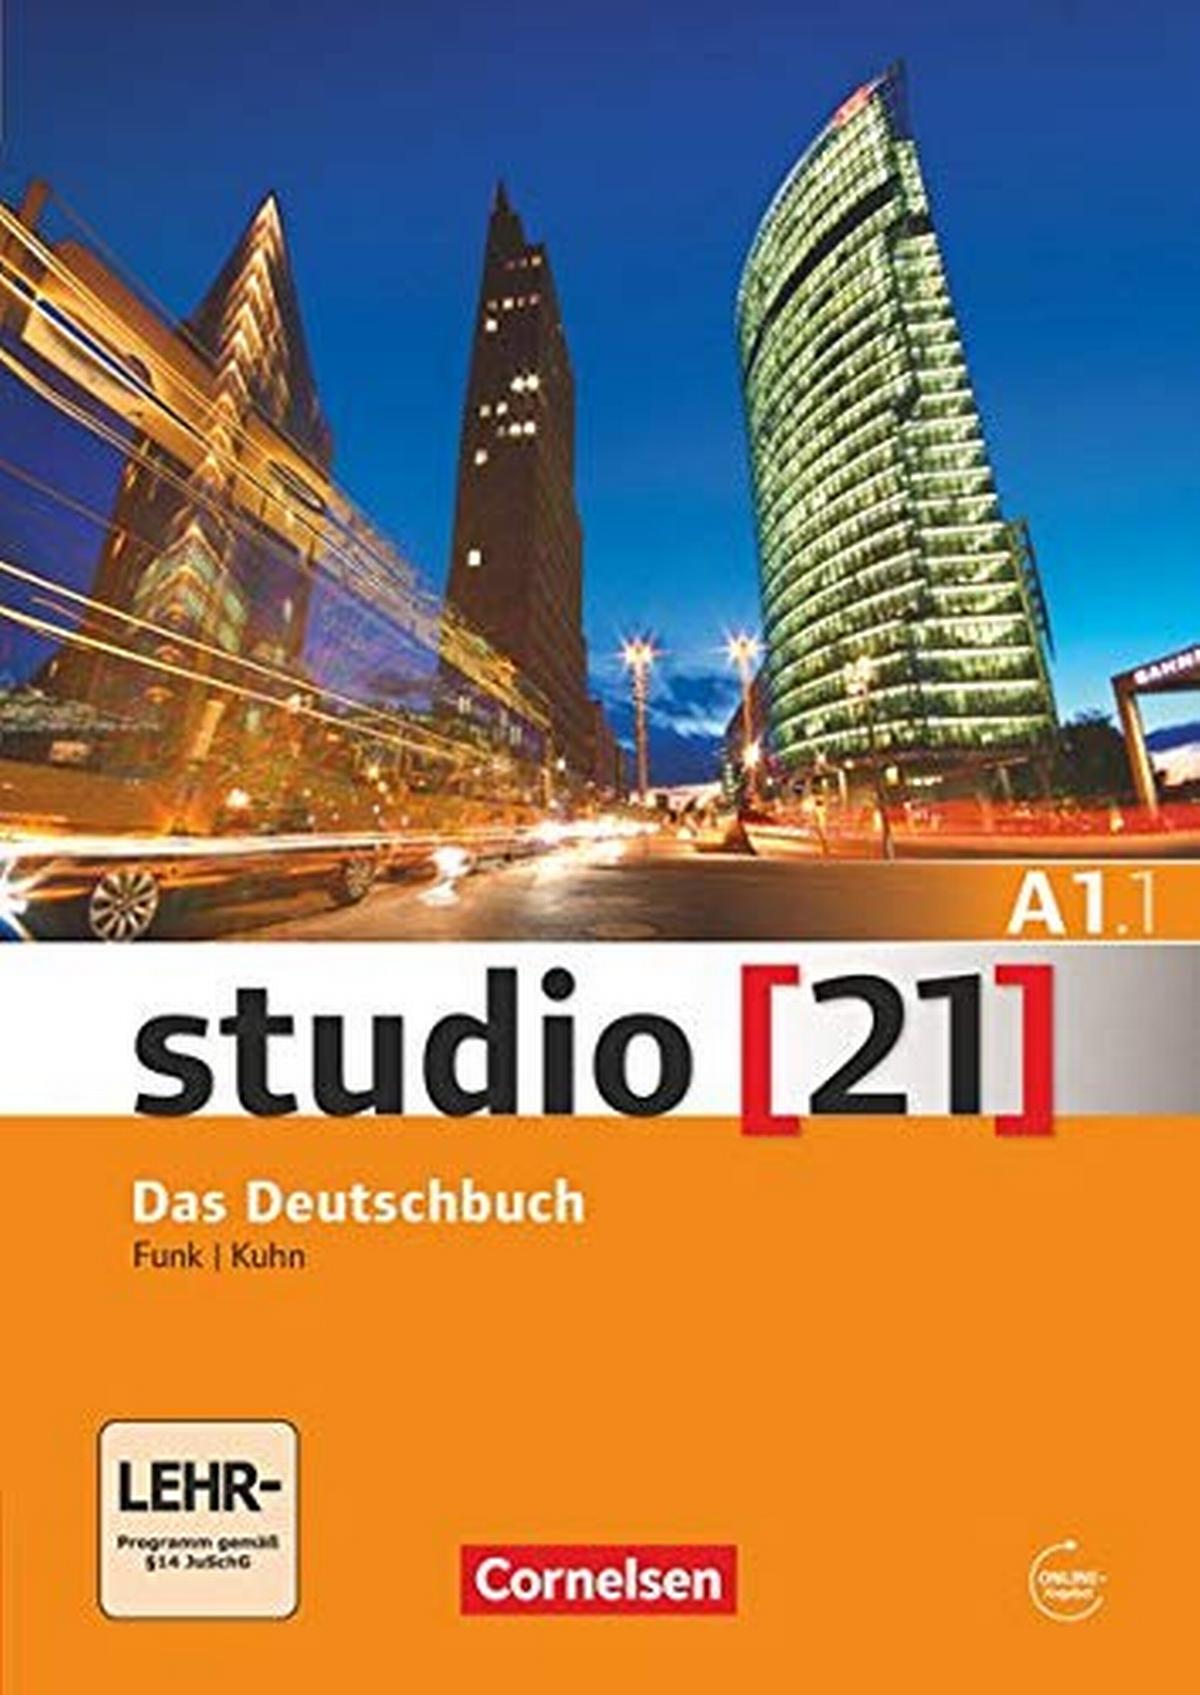 Studio 21 Das Deutschbuch A1.1